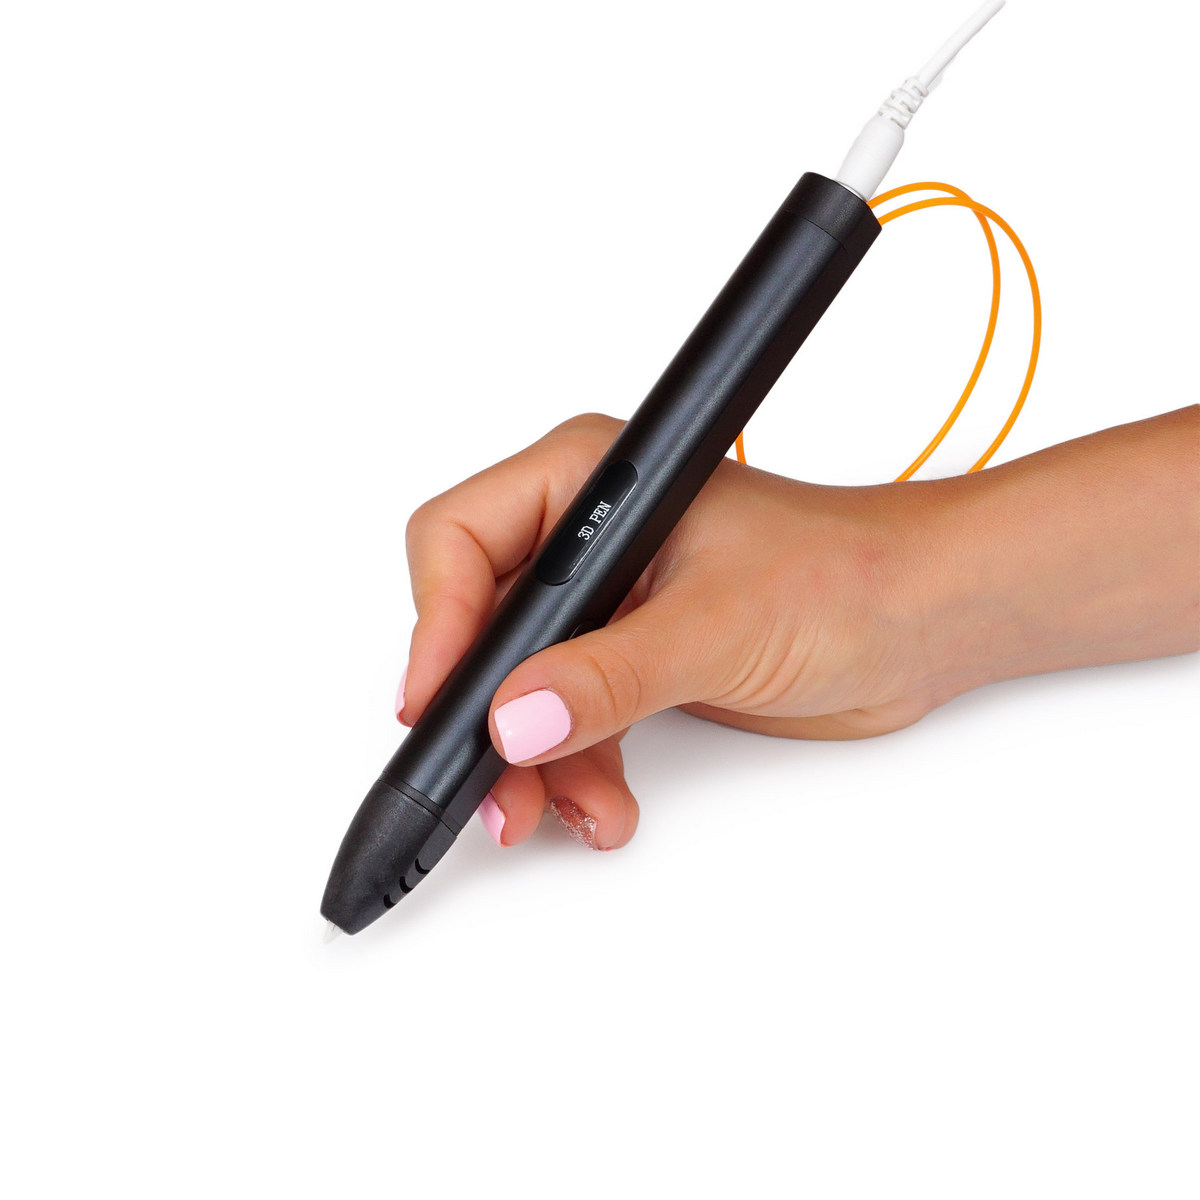 рисование 3D-ручкой - фотография для размещения на Amazon